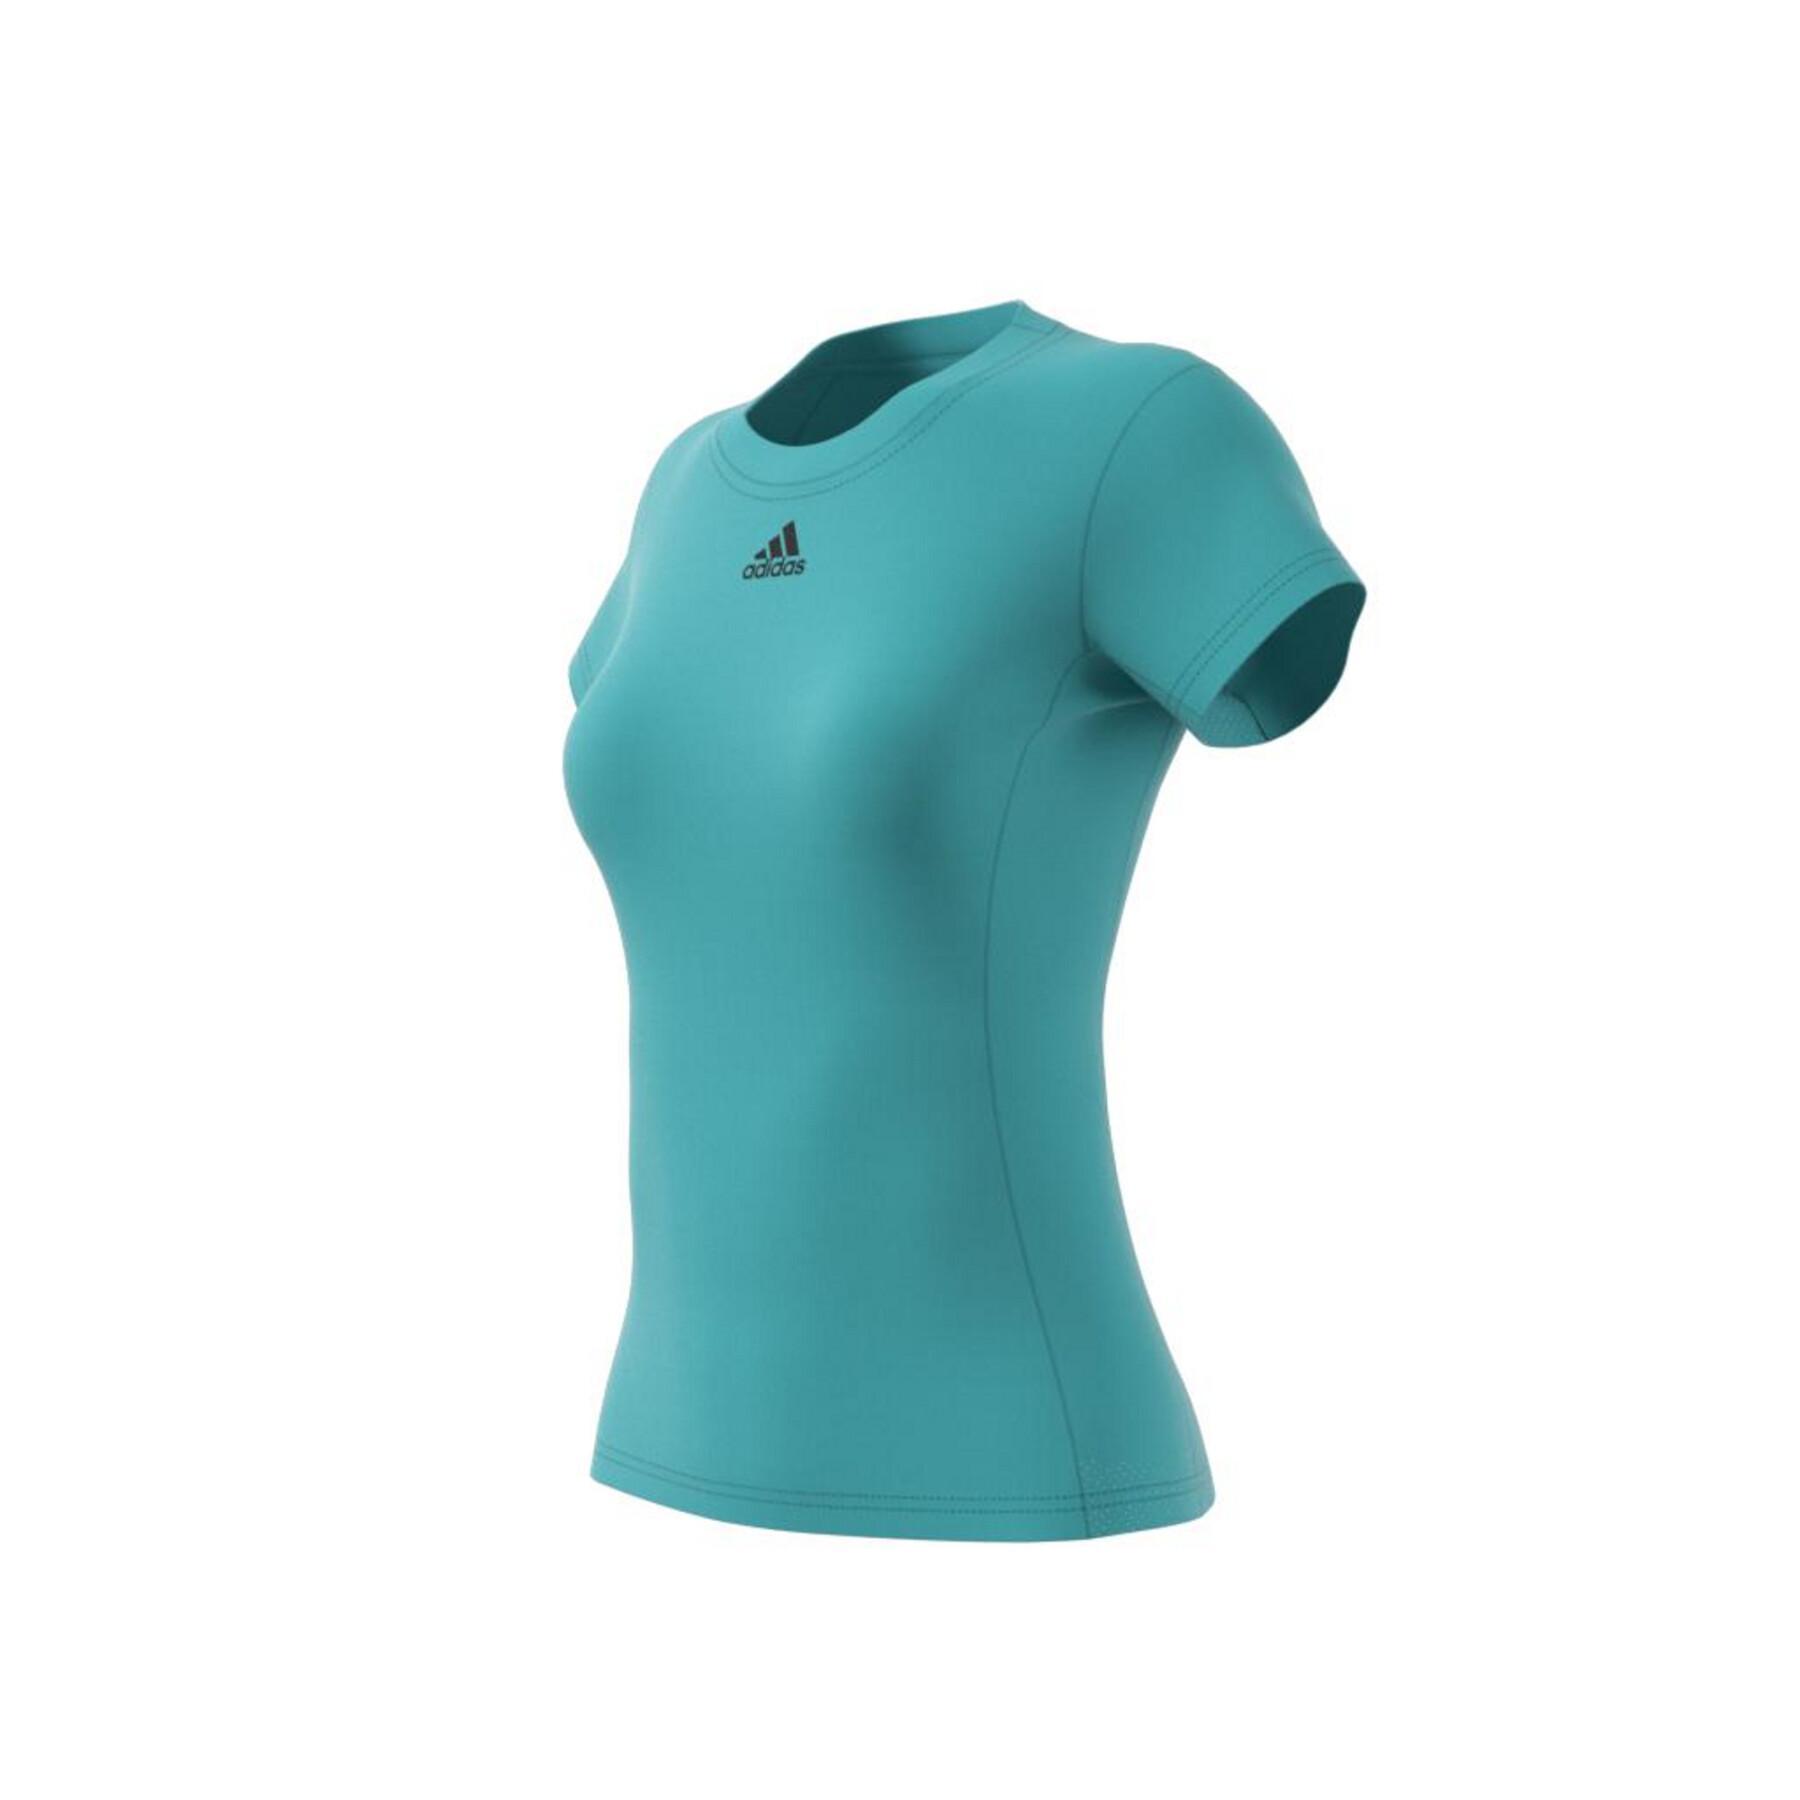 T-shirt för kvinnor adidas Tennis Freelift